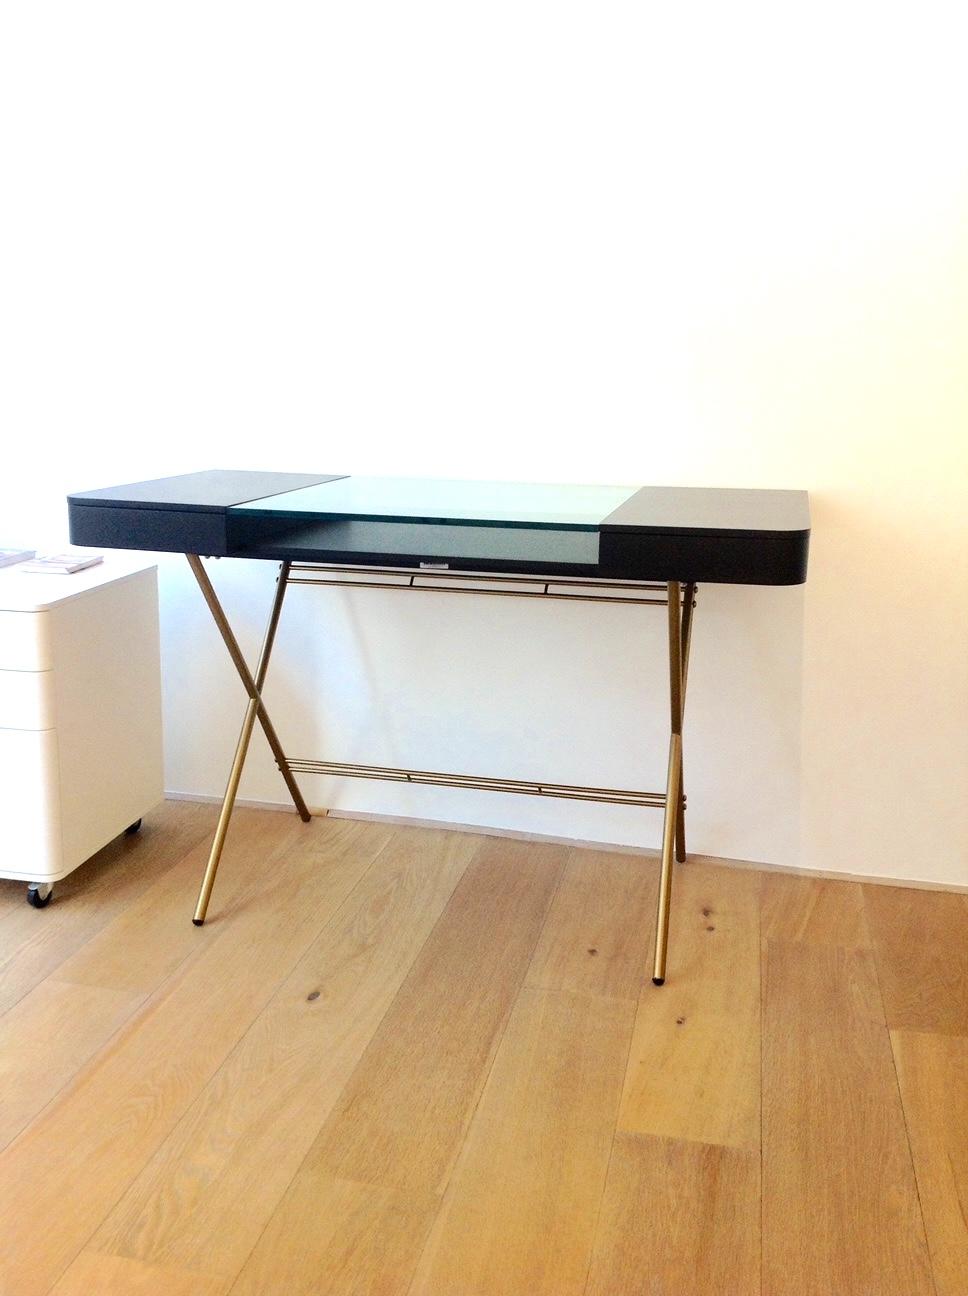 Der Schreibtisch Cosimo wurde von dem Architekten Marco Zanuso JR für die französische Luxusmöbelmarke Adentro Paris entworfen.
Der Schreibtisch besteht aus einer zentralen Klarglasplatte mit einer Ablage darunter und hat auf beiden Seiten